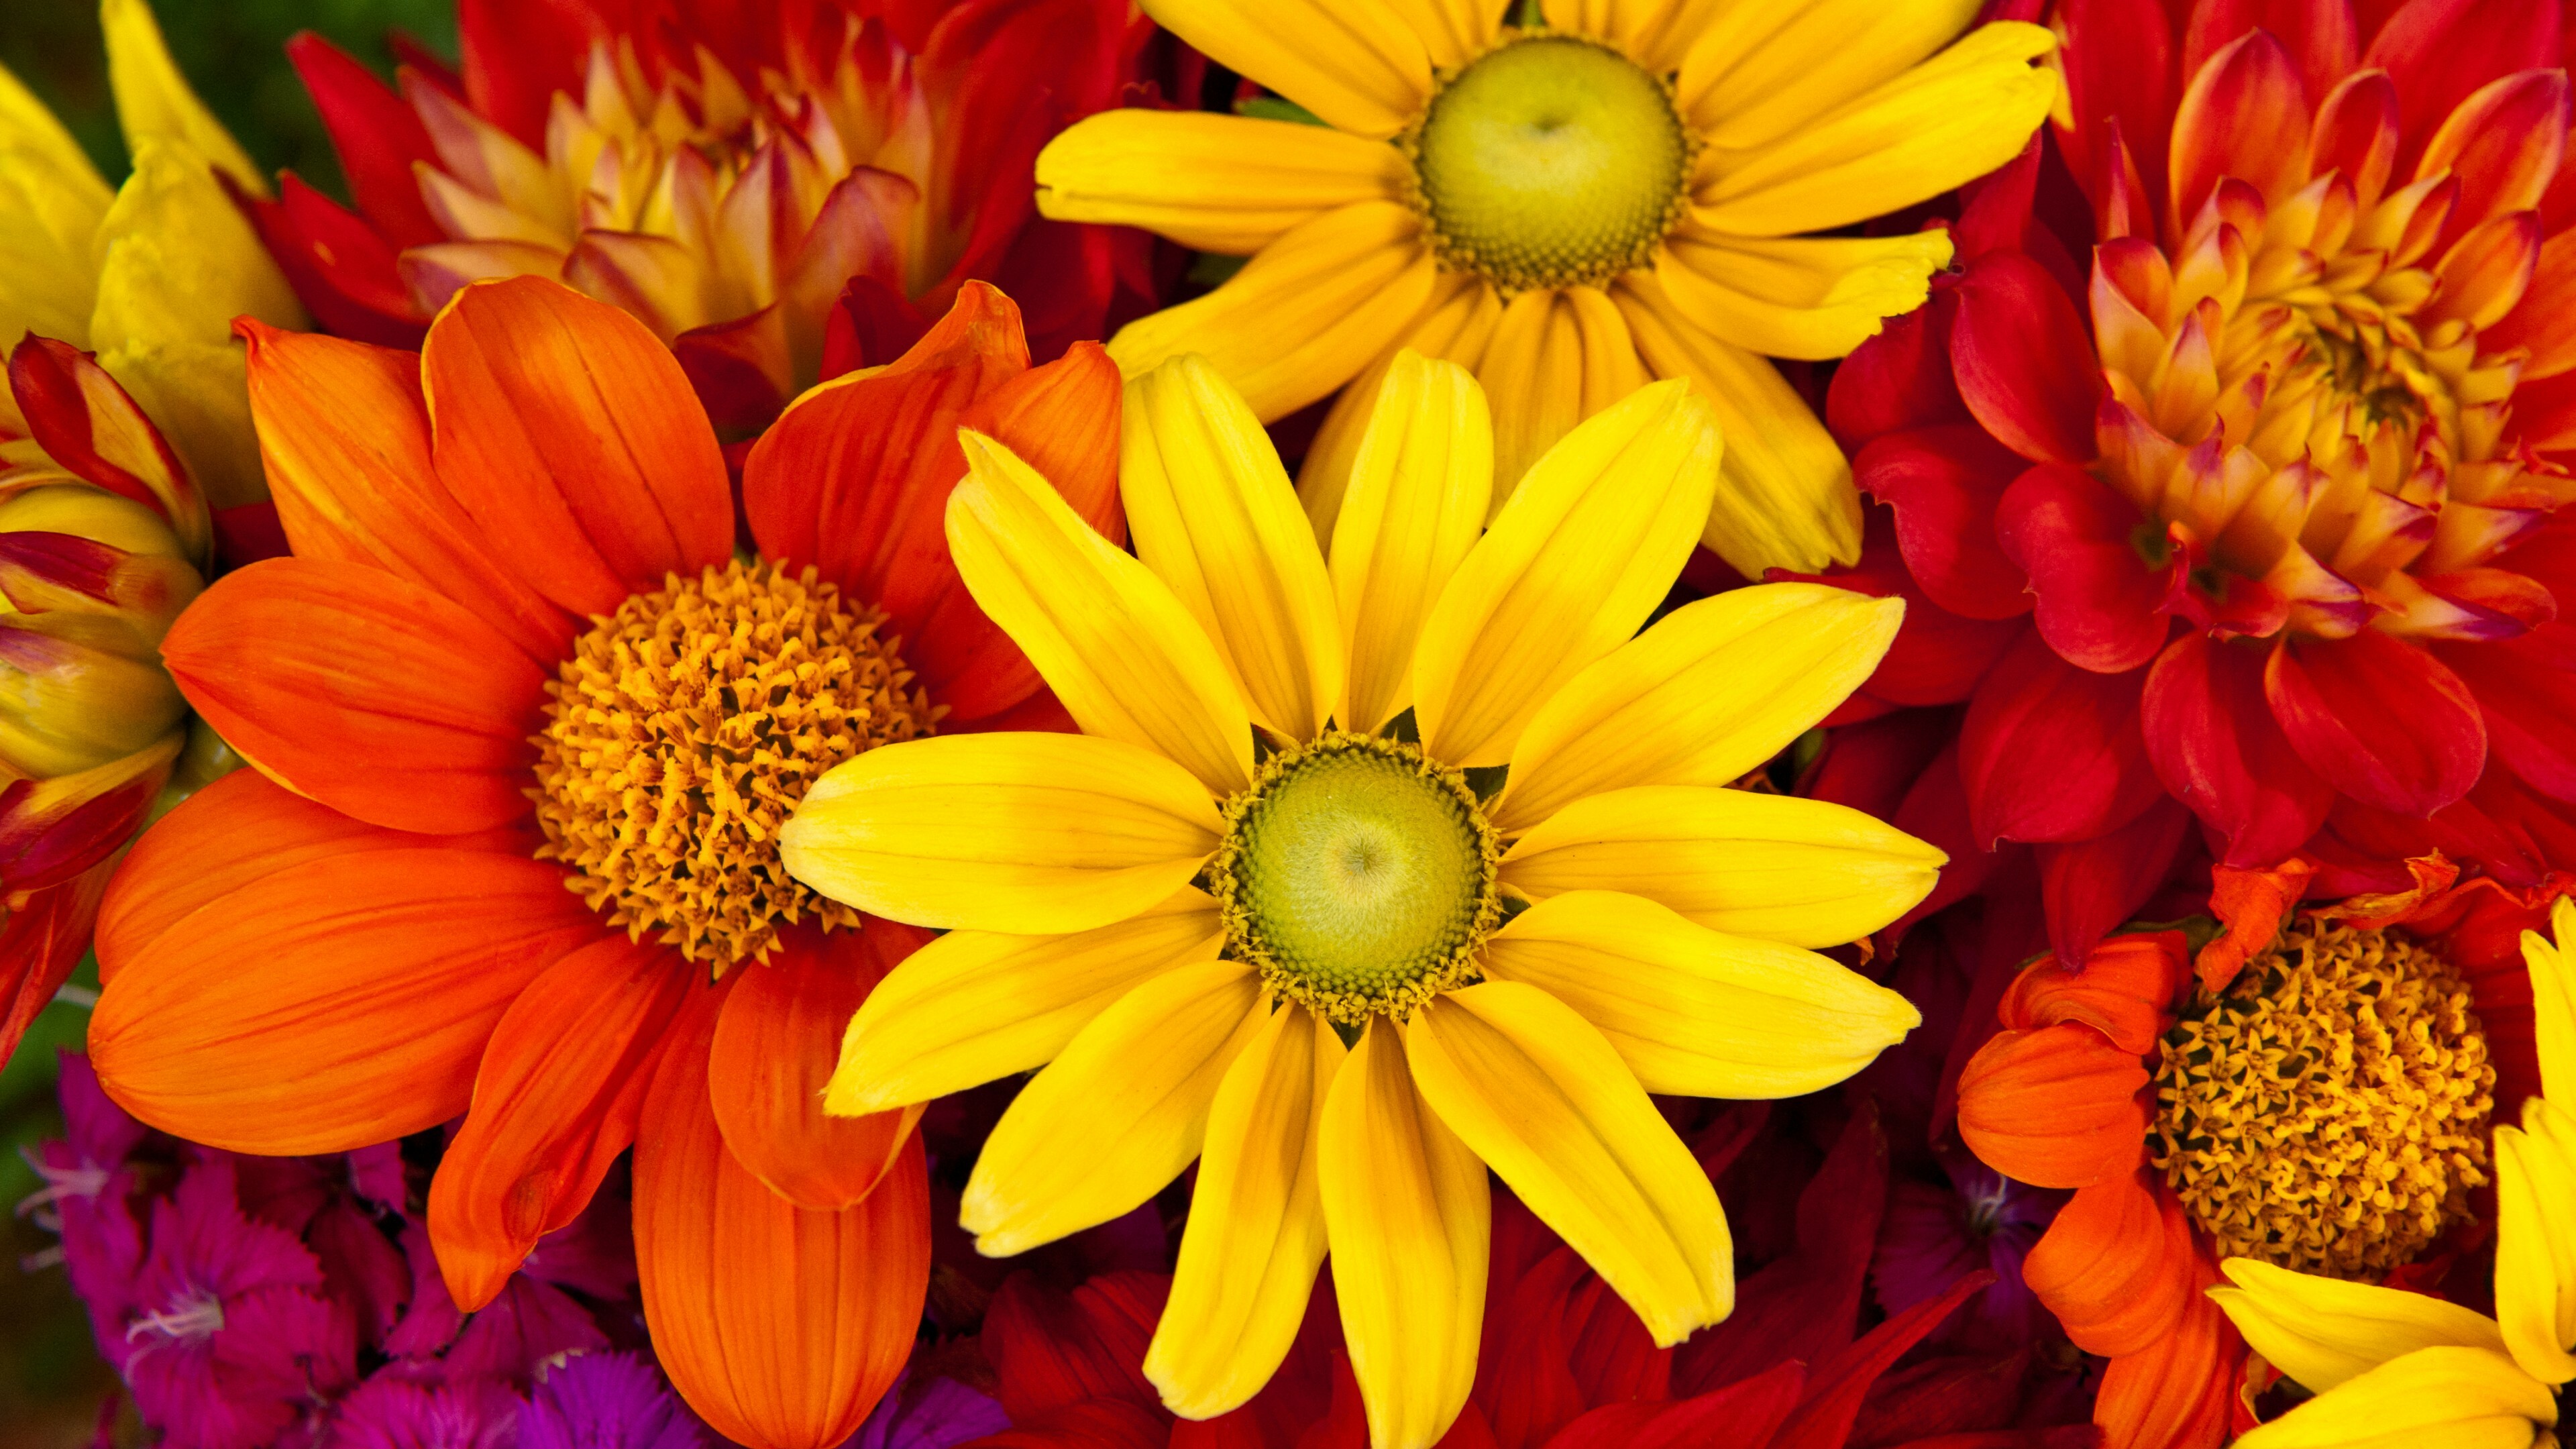 Flower Bouquet: Flowers, Colorful, Petals, Flower Arranging. 3840x2160 4K Wallpaper.